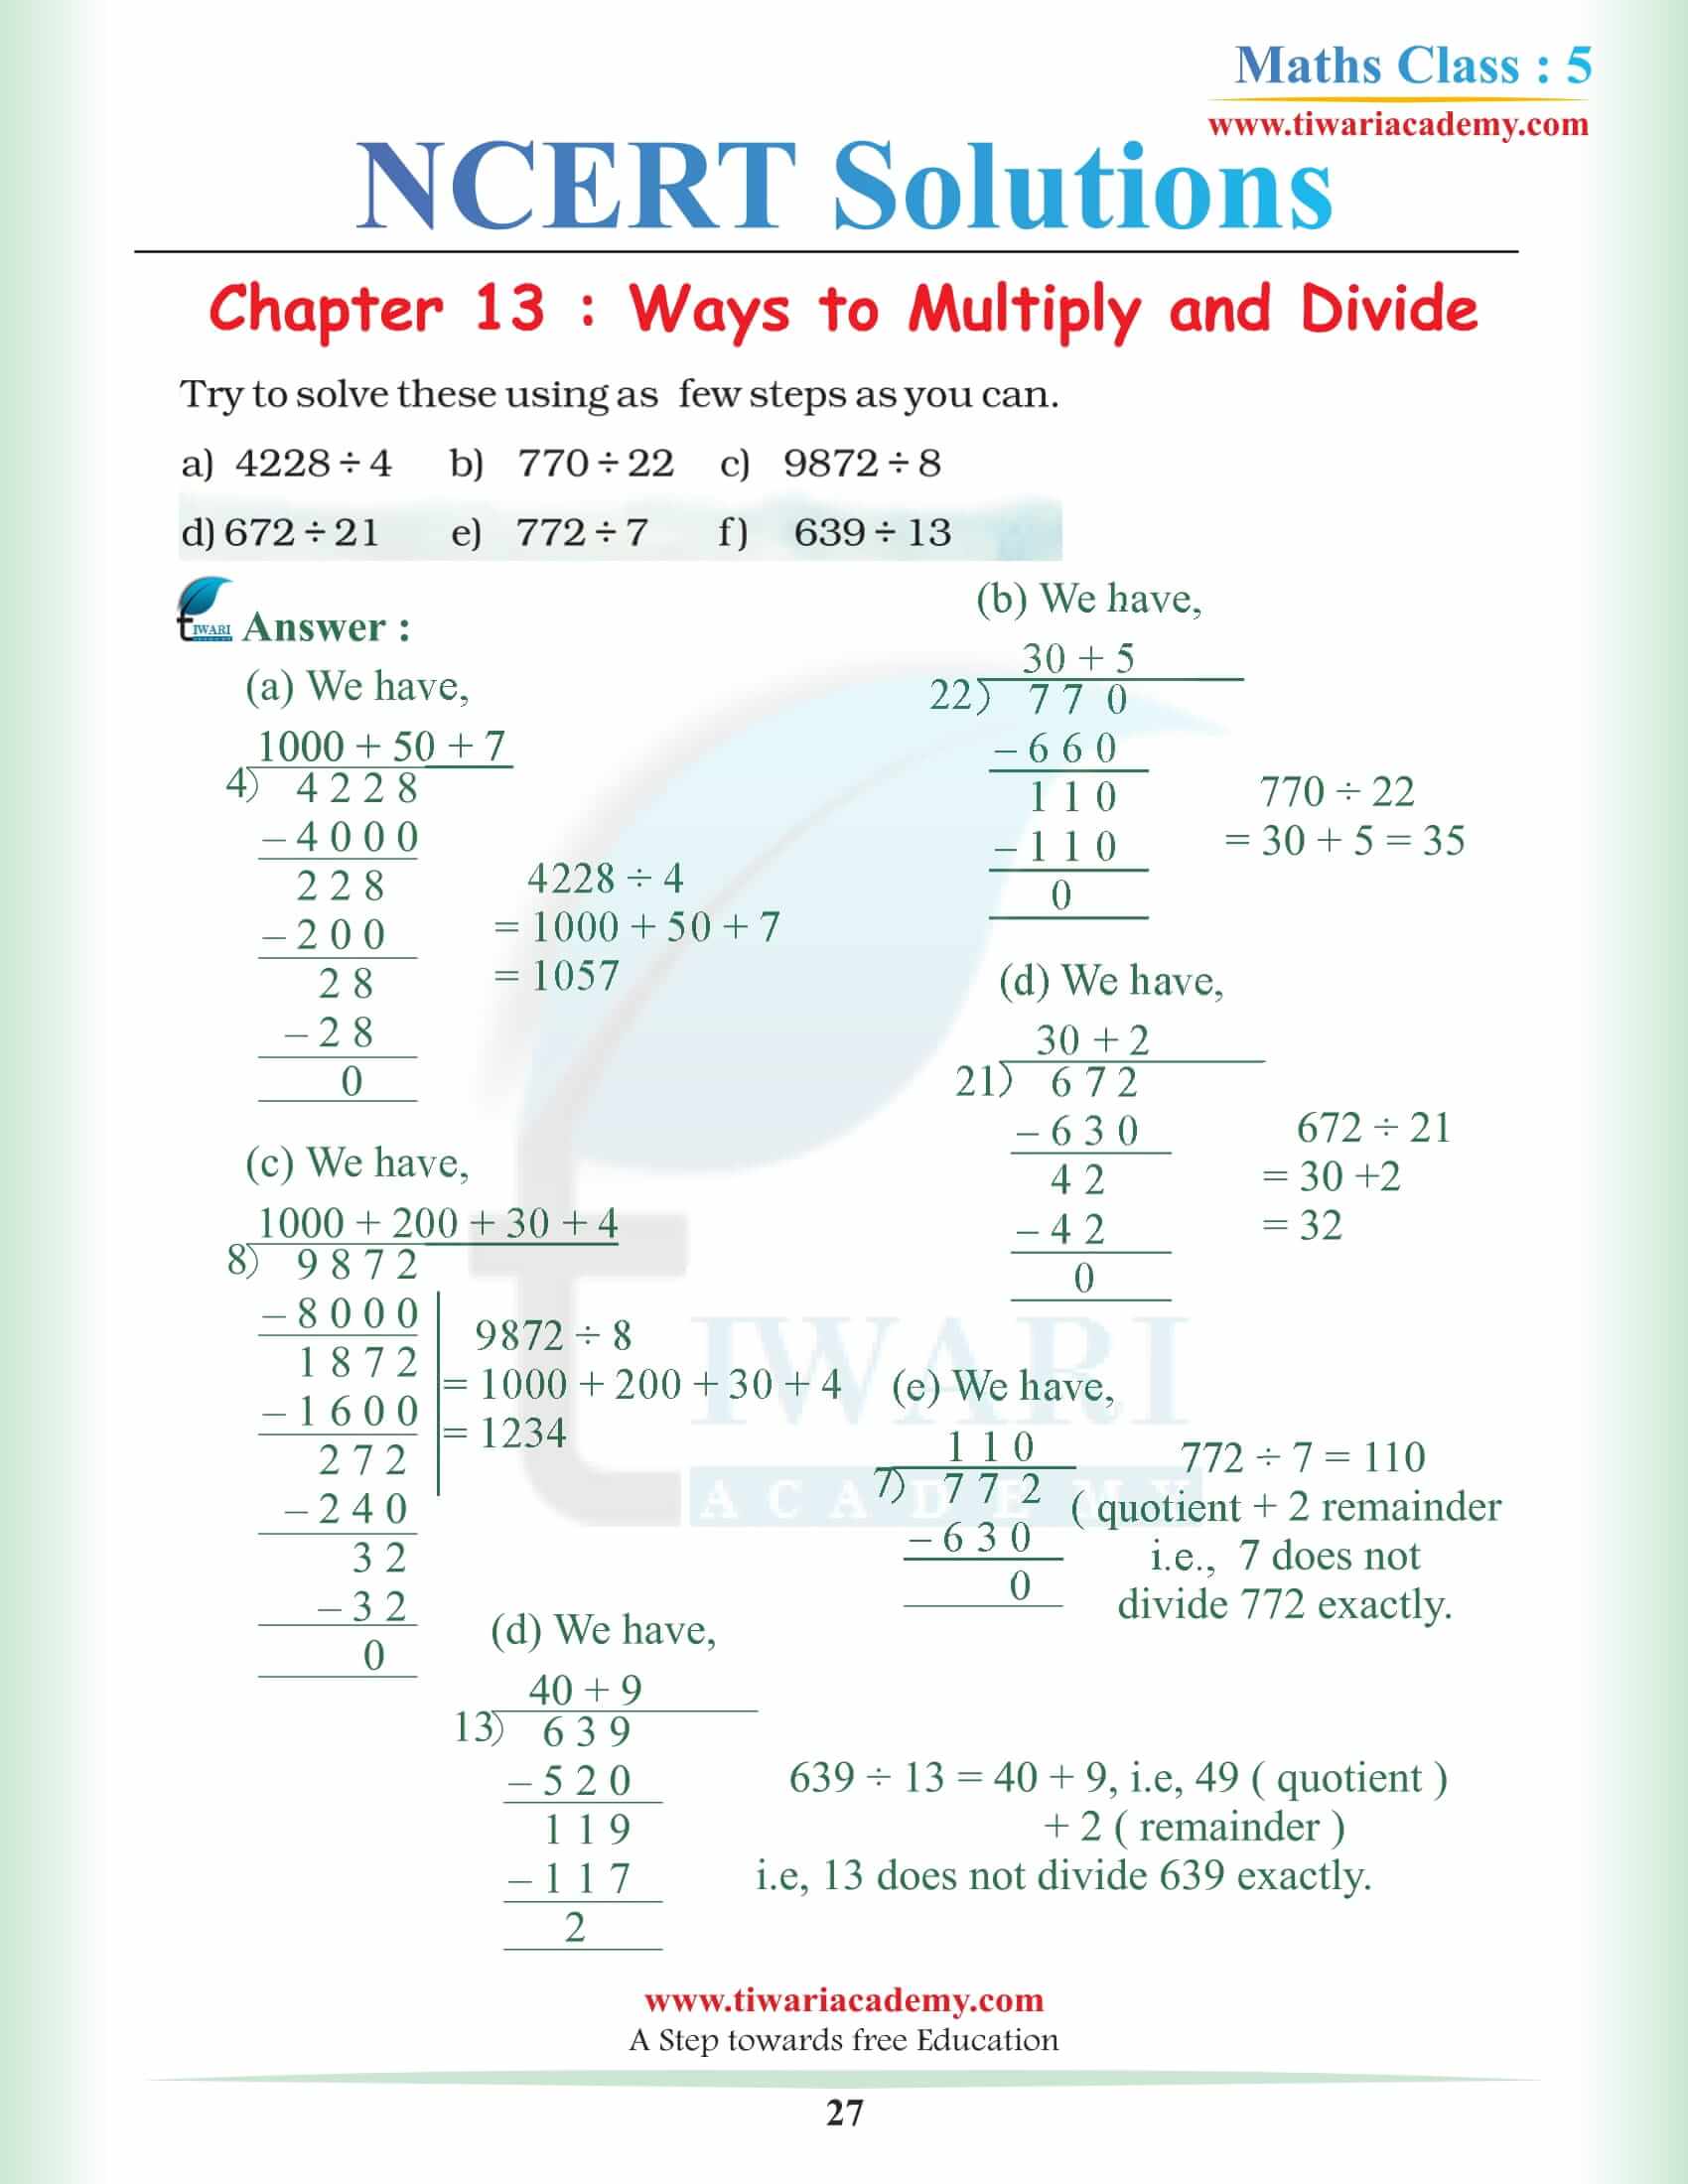 5th Maths Chapter 13 NCERT